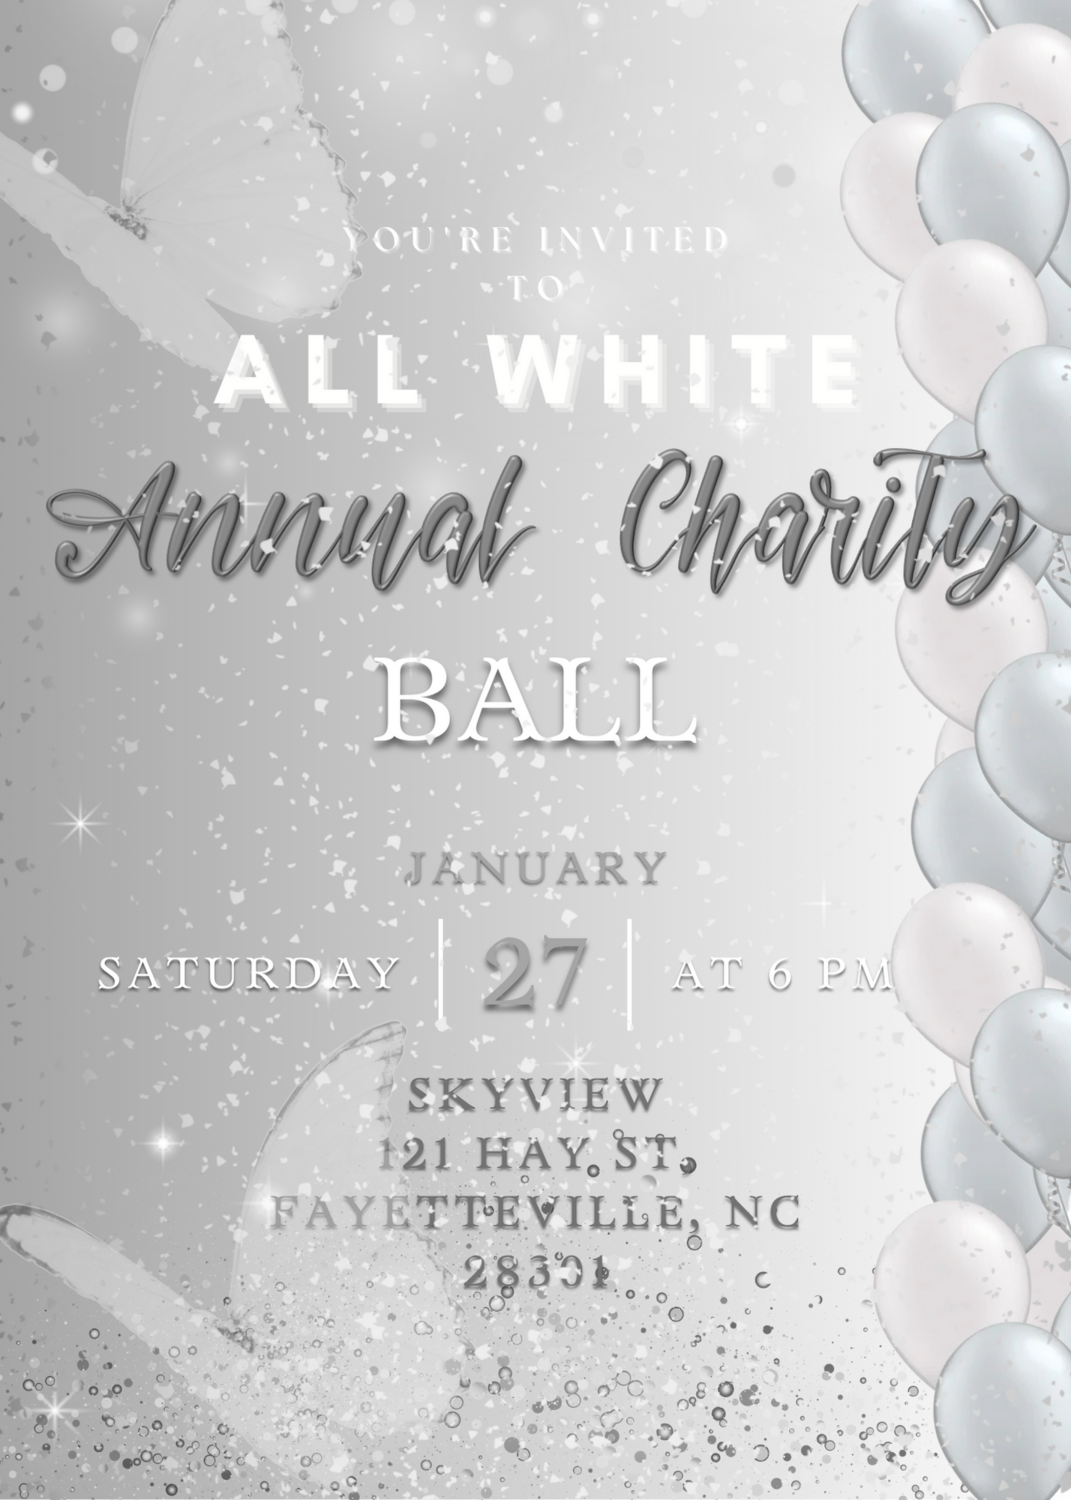 All White Annual Charity Ball